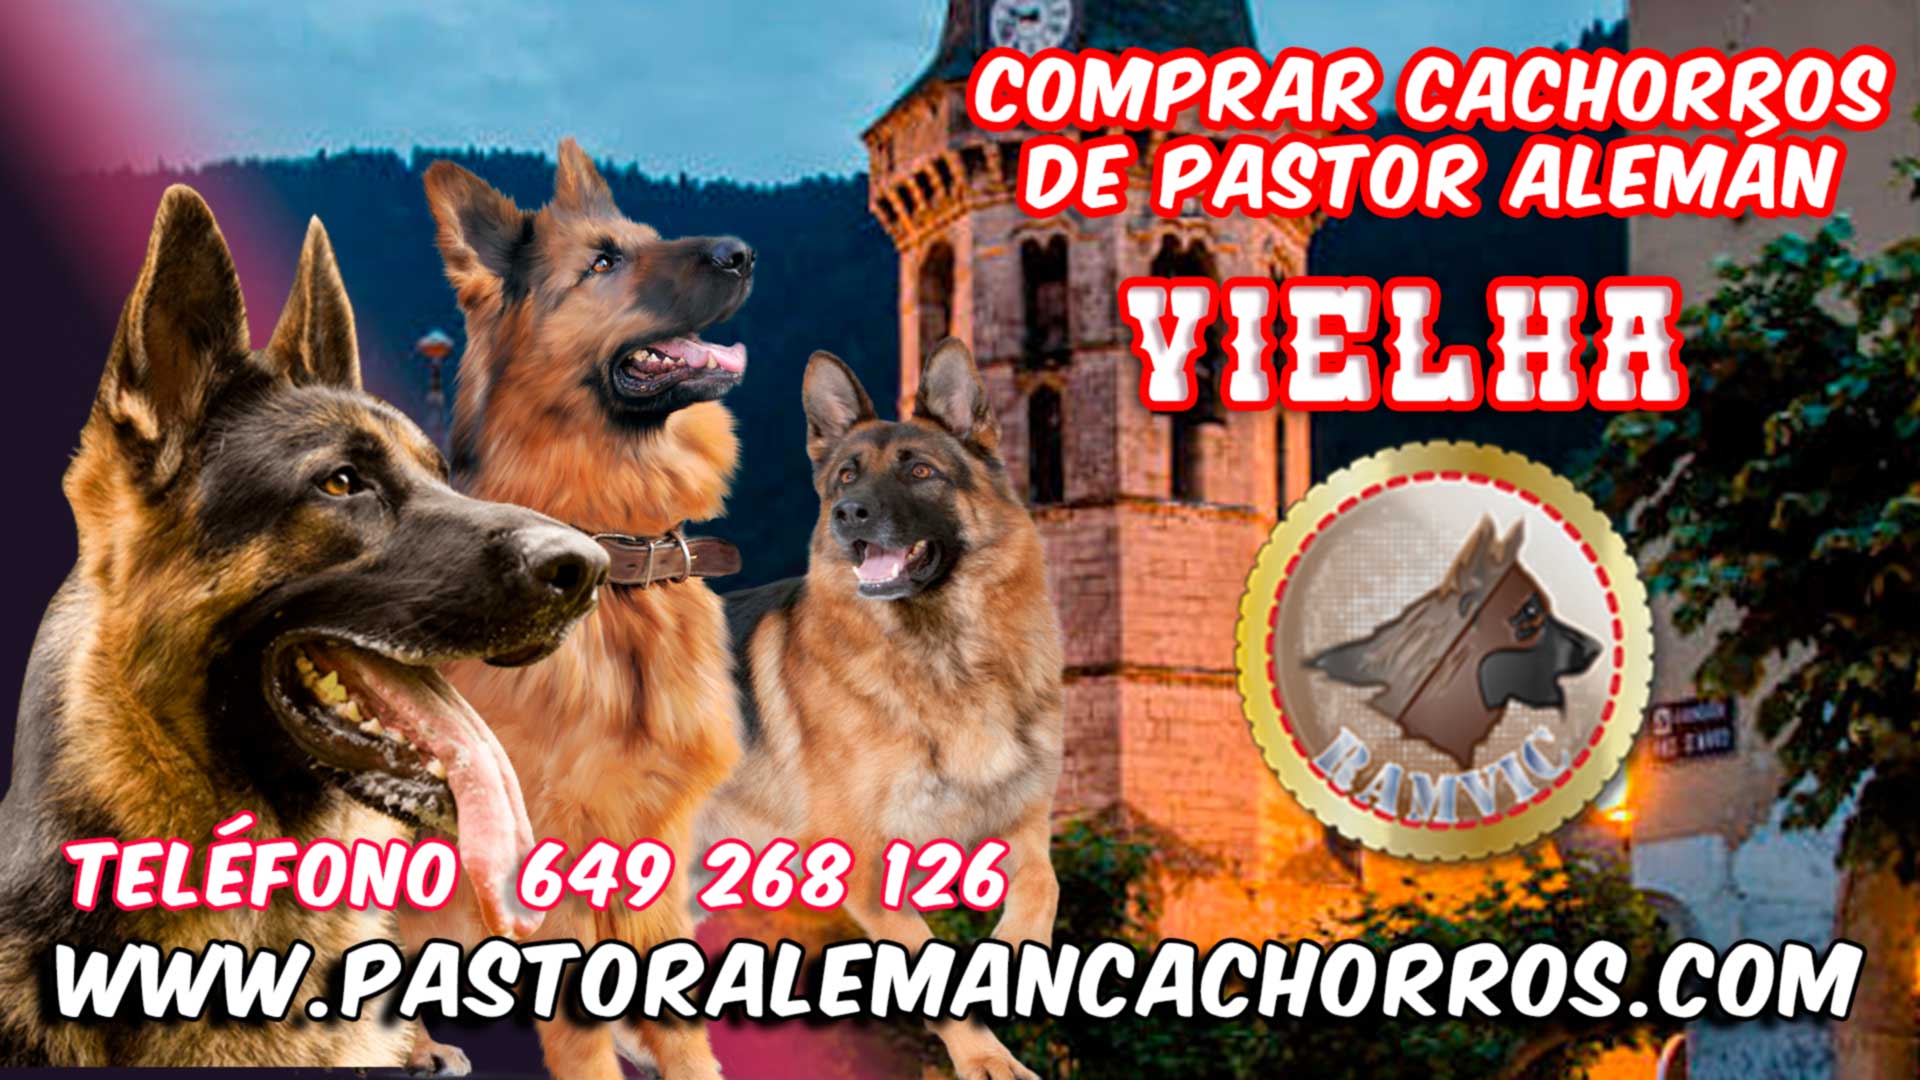 Comprar cachorros de Pastor Alemán en Viella